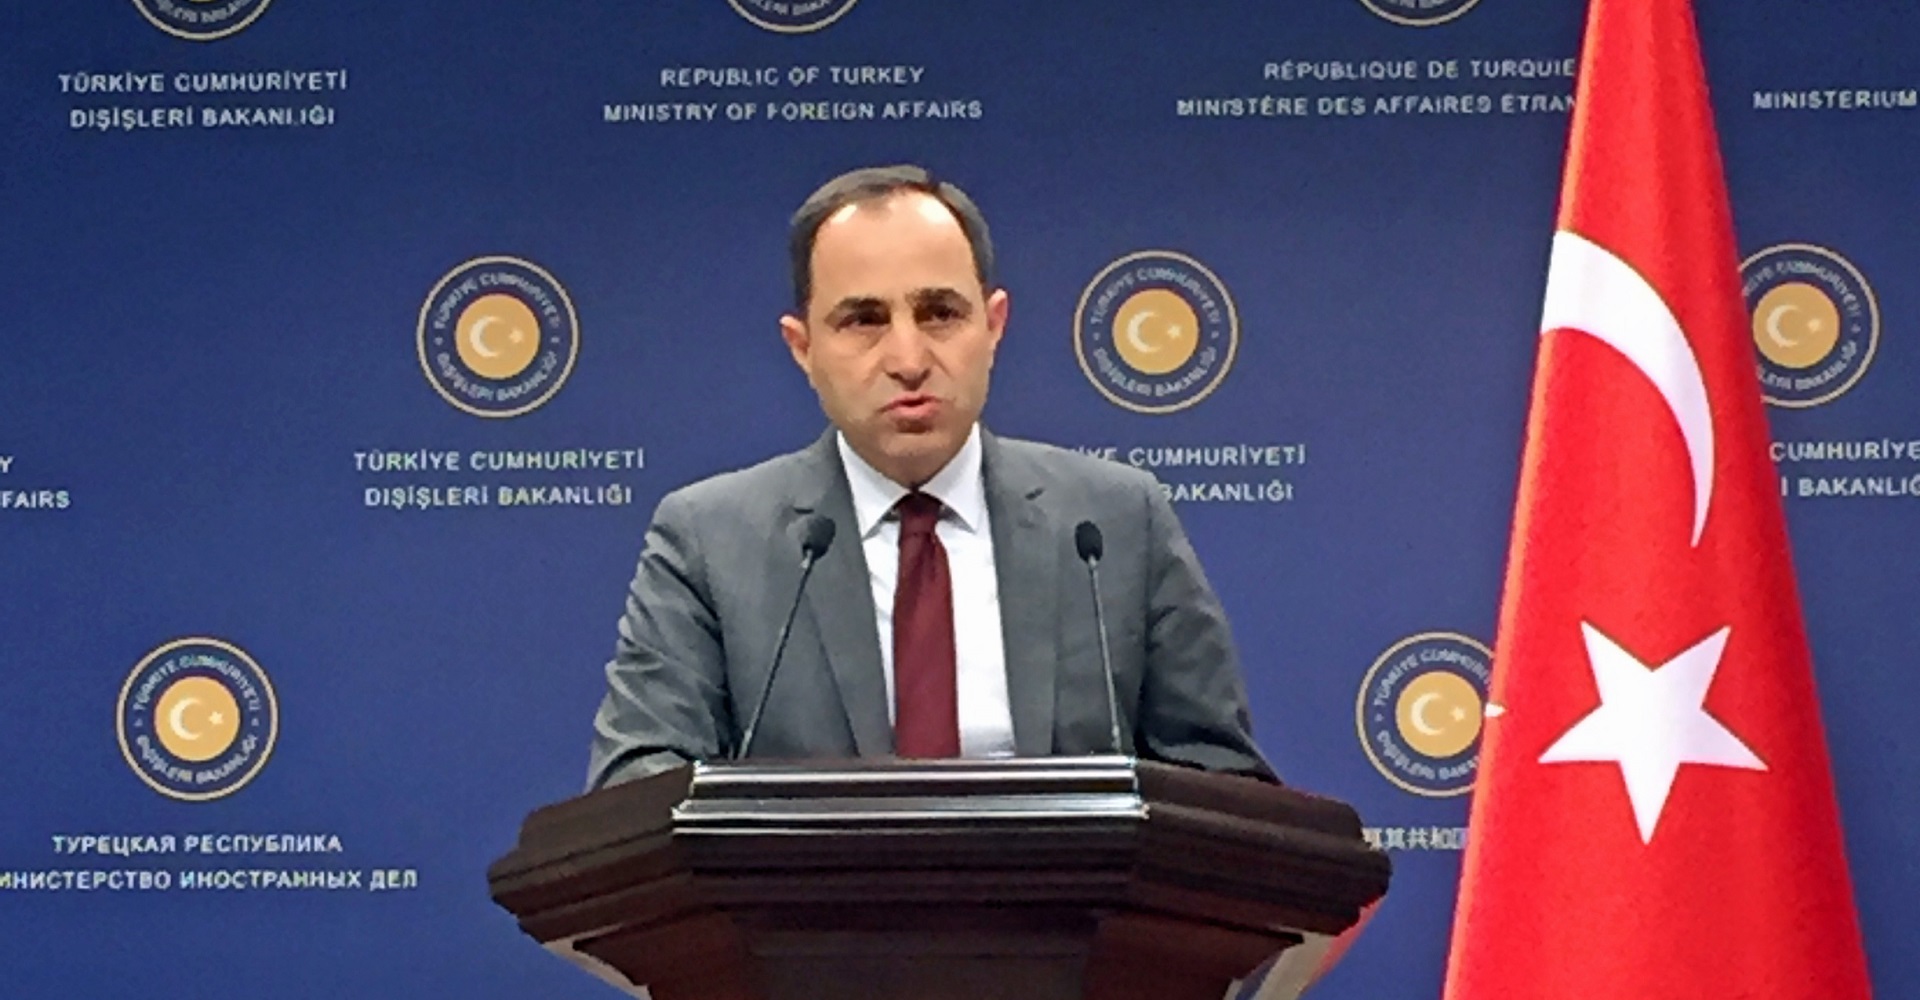 Türkiye reacciona a la resolución del Senado francés sobre asirios y asirio-caldeos